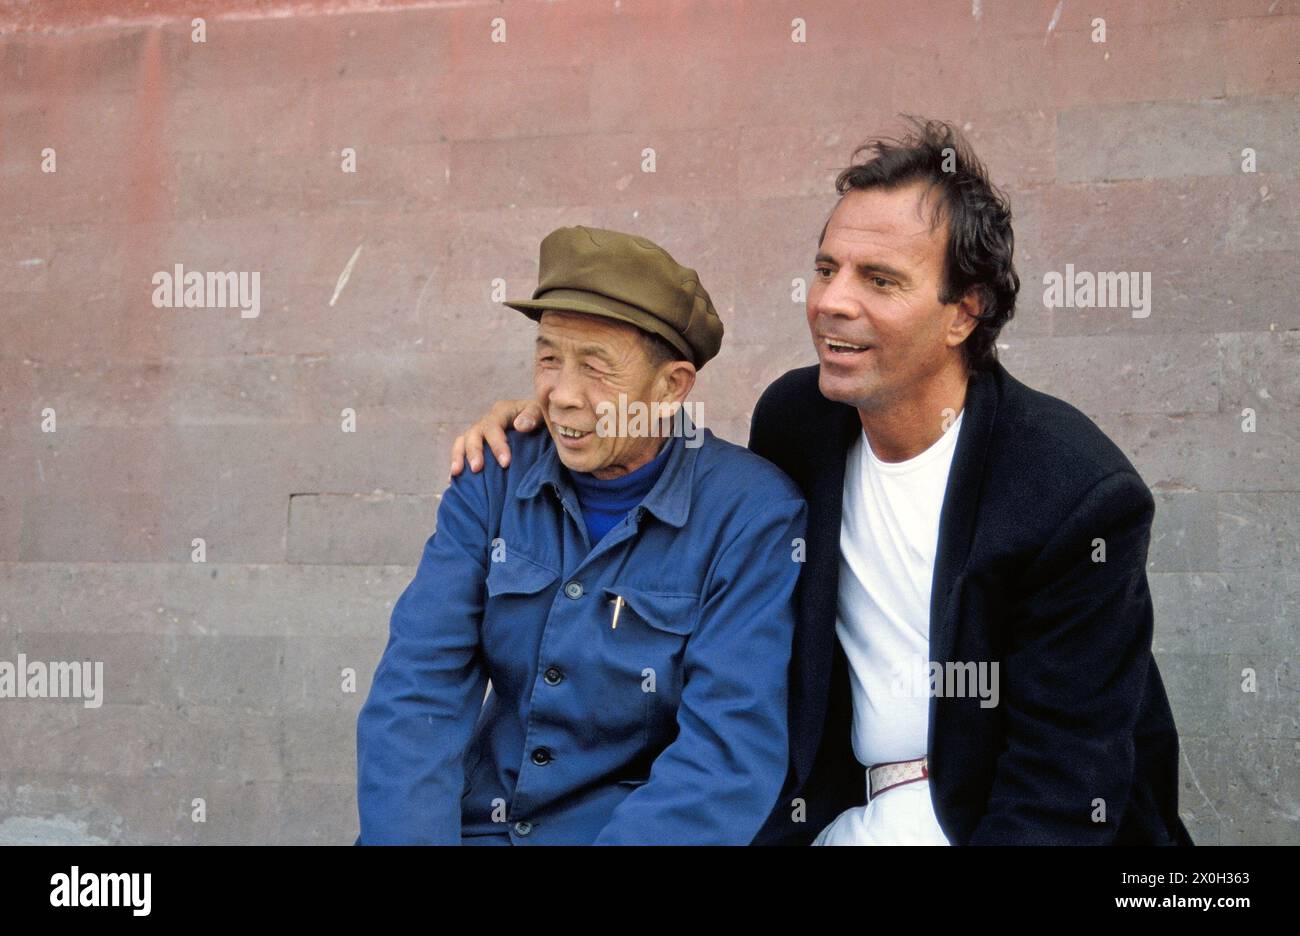 Julio Iglesias pose avec un homme chinois dans la Cité interdite pour les photographes (pas de version de modèle) [traduction automatique] Banque D'Images